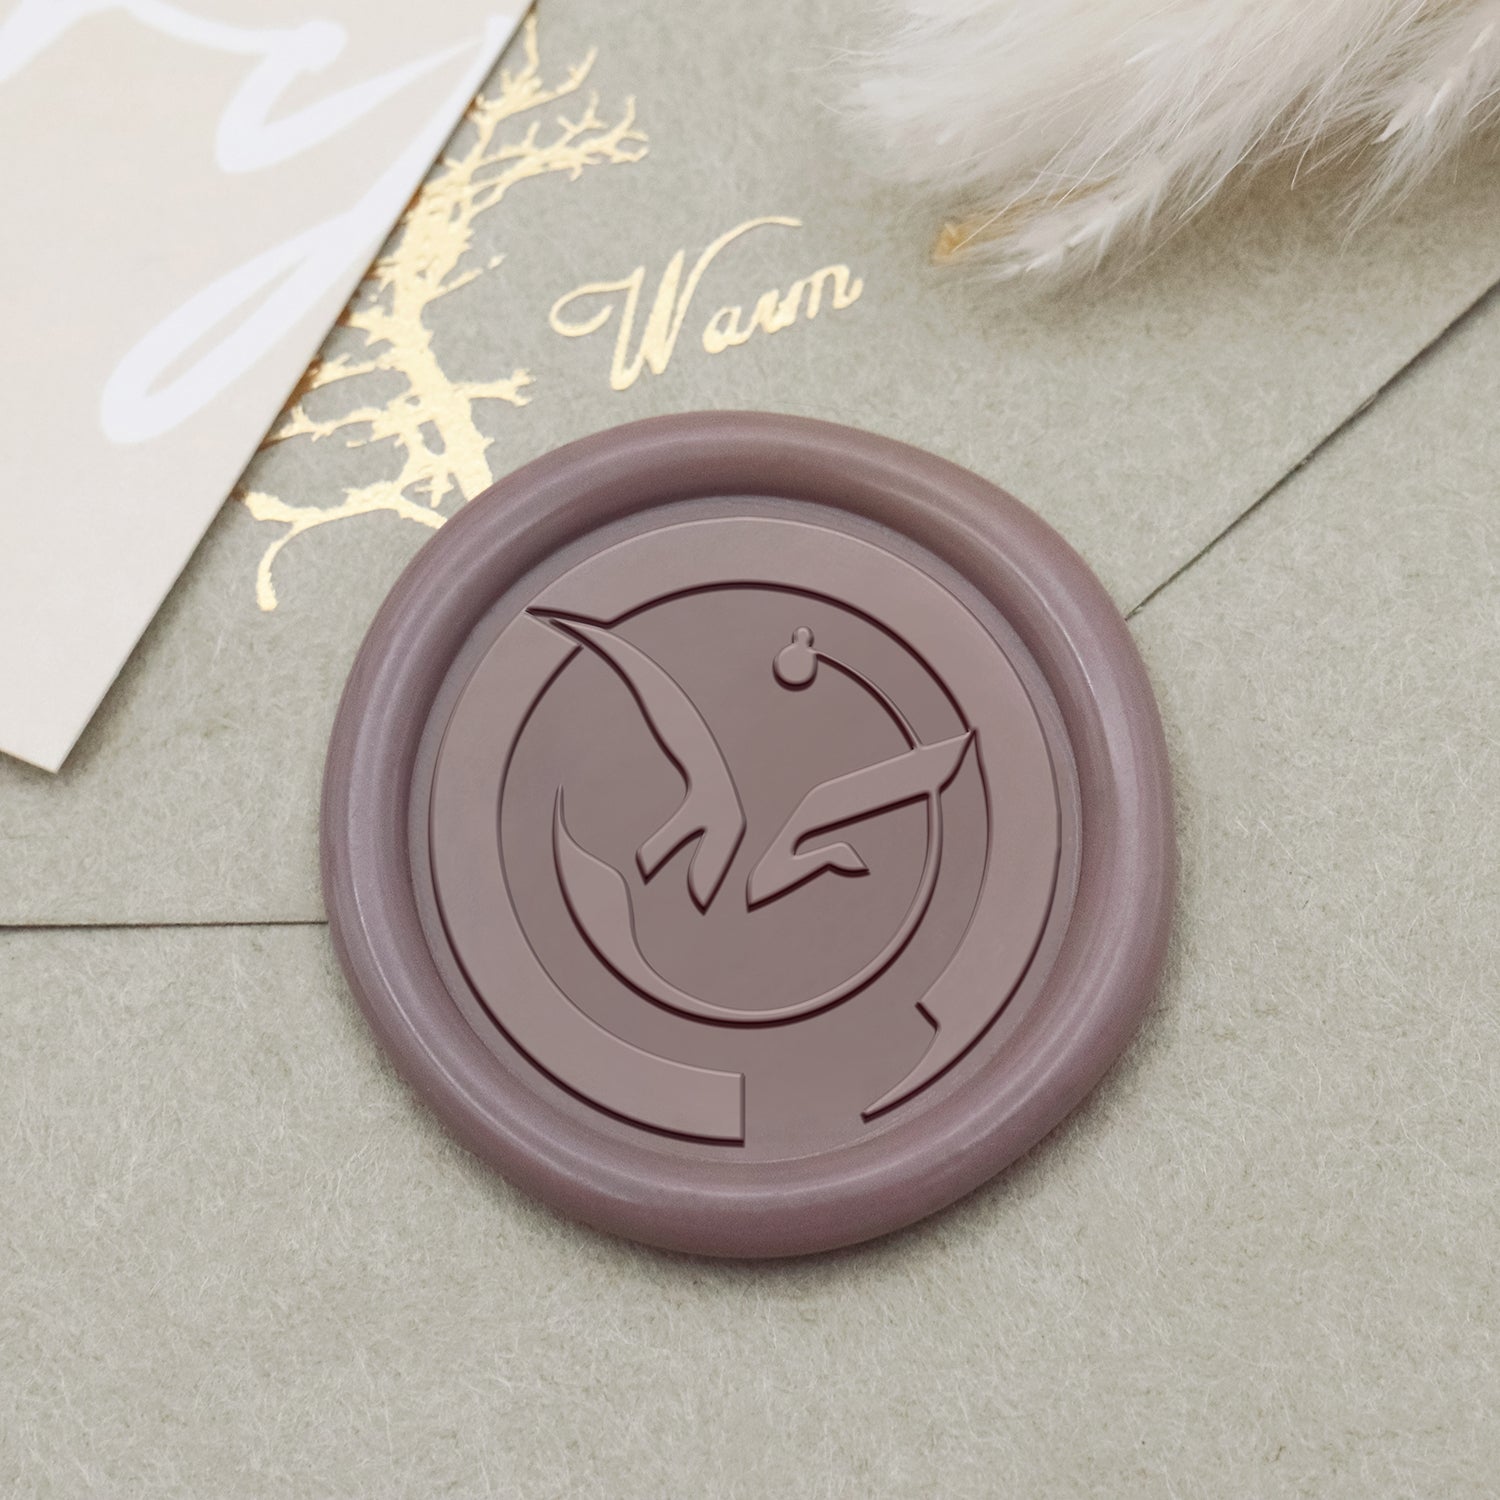 Stamprints Yoda's Crest Design Wax Seal Stamp 1